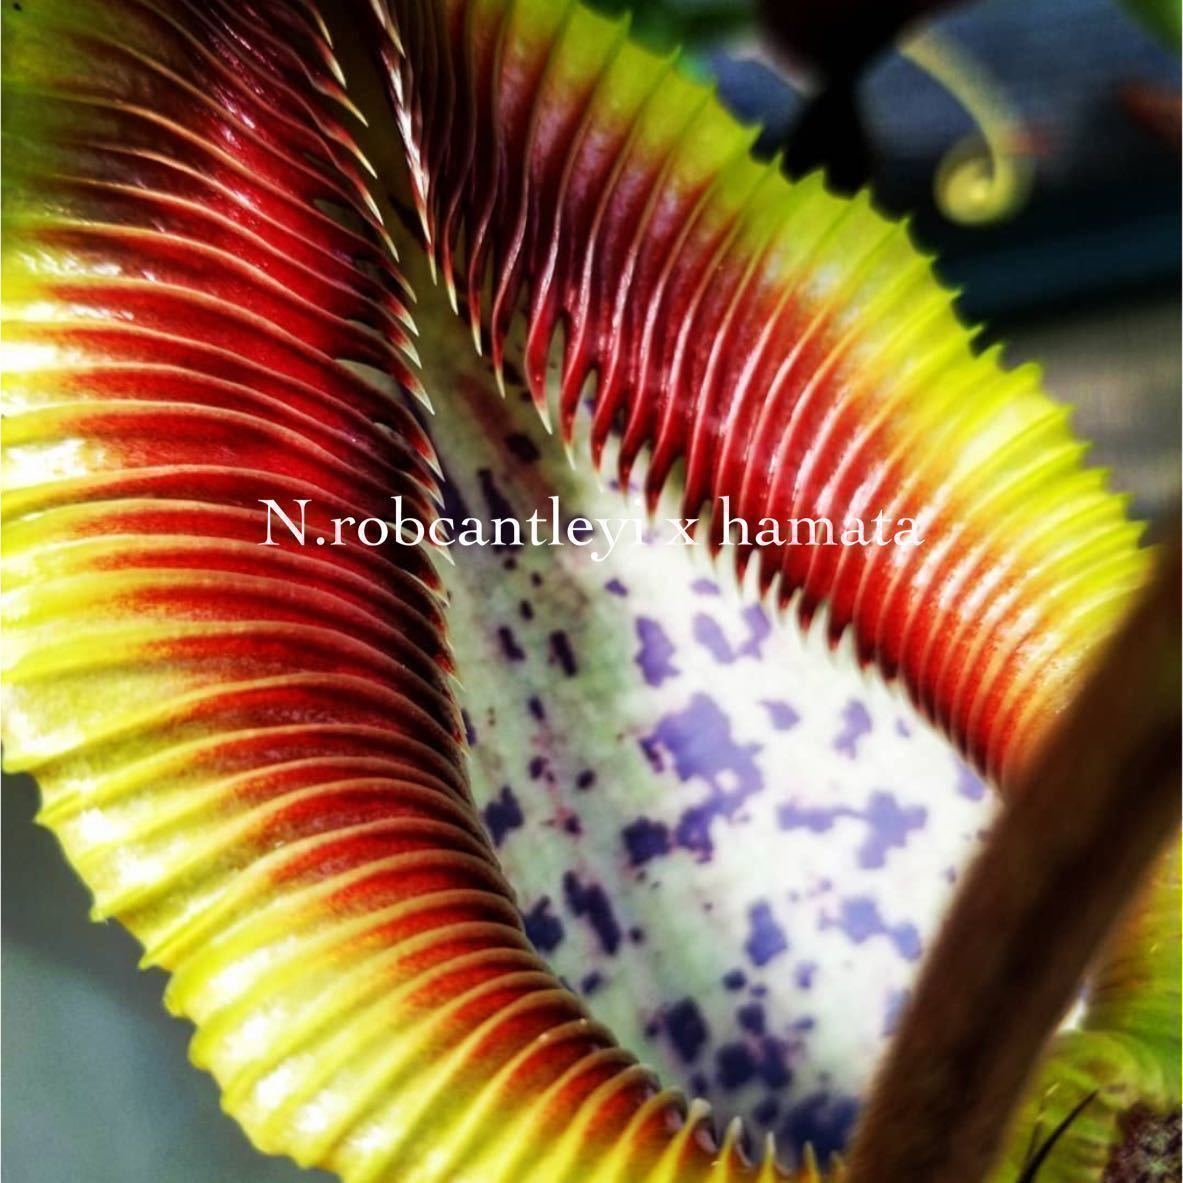 Nepenthes オンラインショップ robcantleyi x hamata マーケット BE3958 ネペンテス ウツボカズラ 7 食虫植物